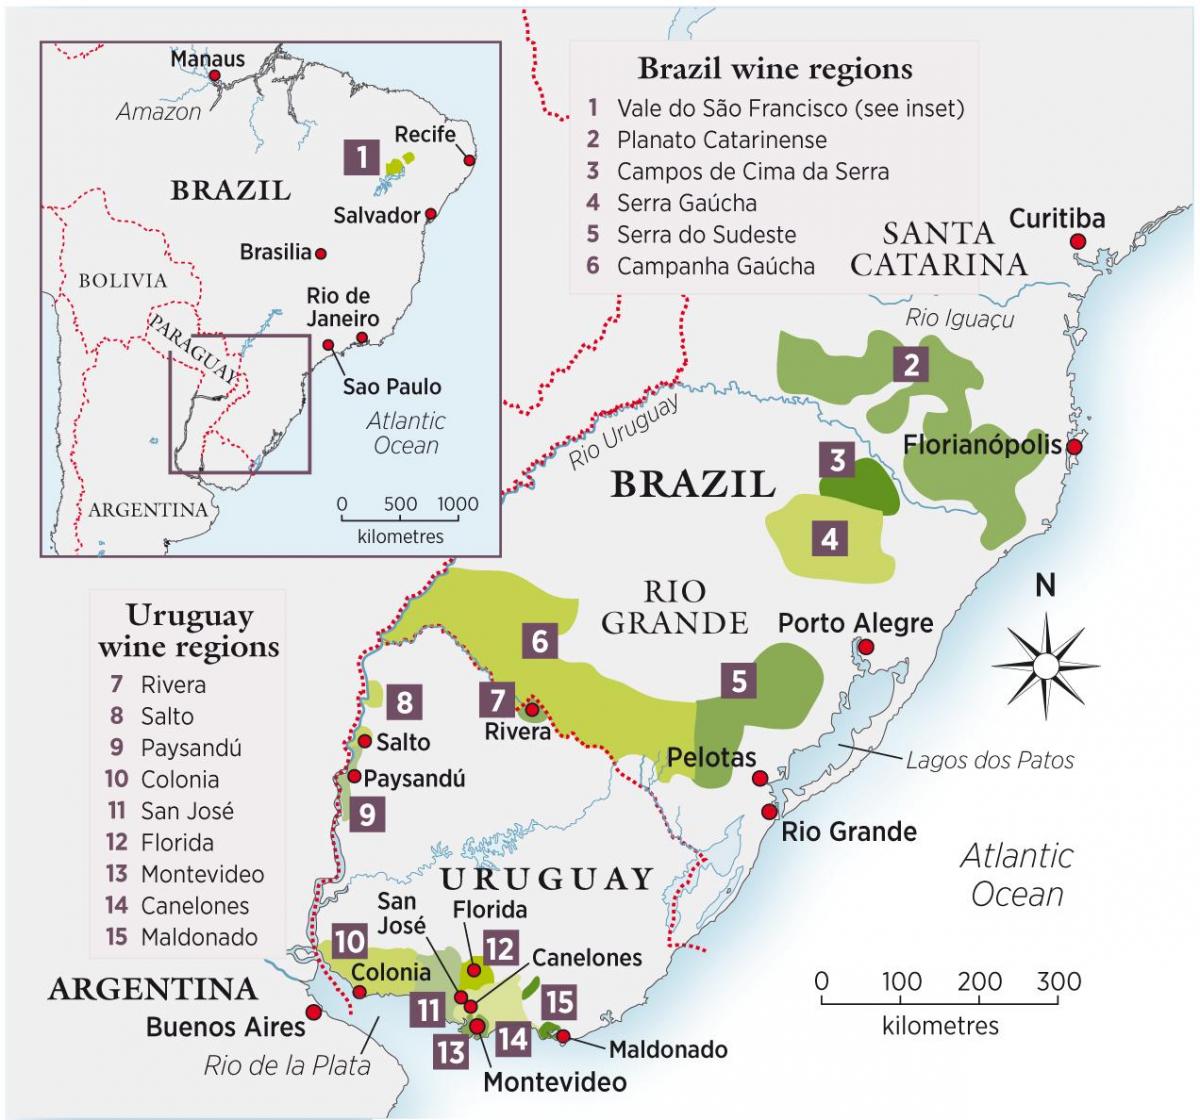 Mappa di Uruguay vino